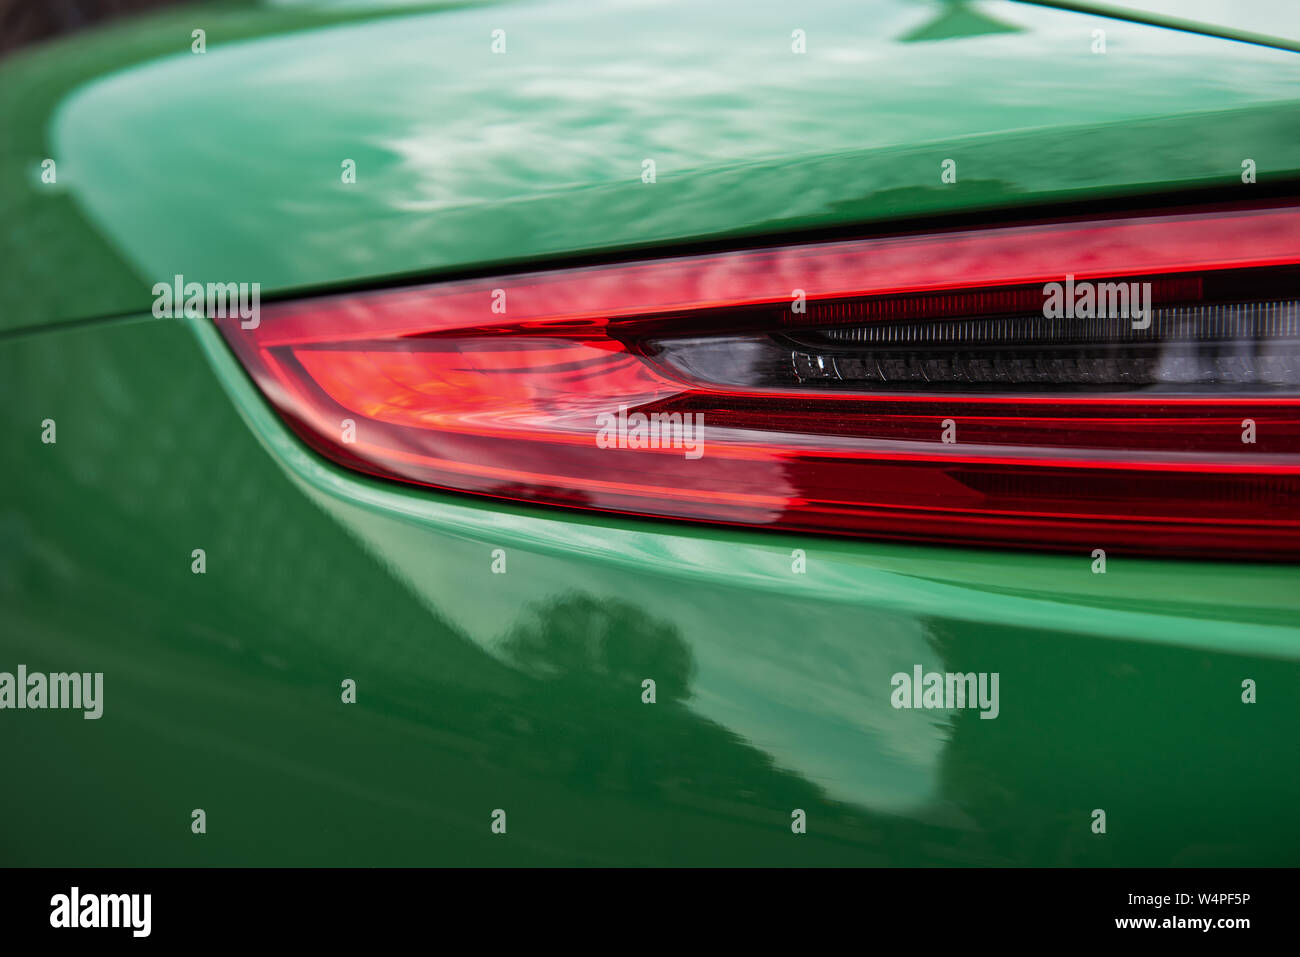 Zurück von einem luxuriösen grünen Sportwagen. Nahaufnahme eines modernen roter Hintergrundbeleuchtung. Schöne Karosserie. Stockfoto